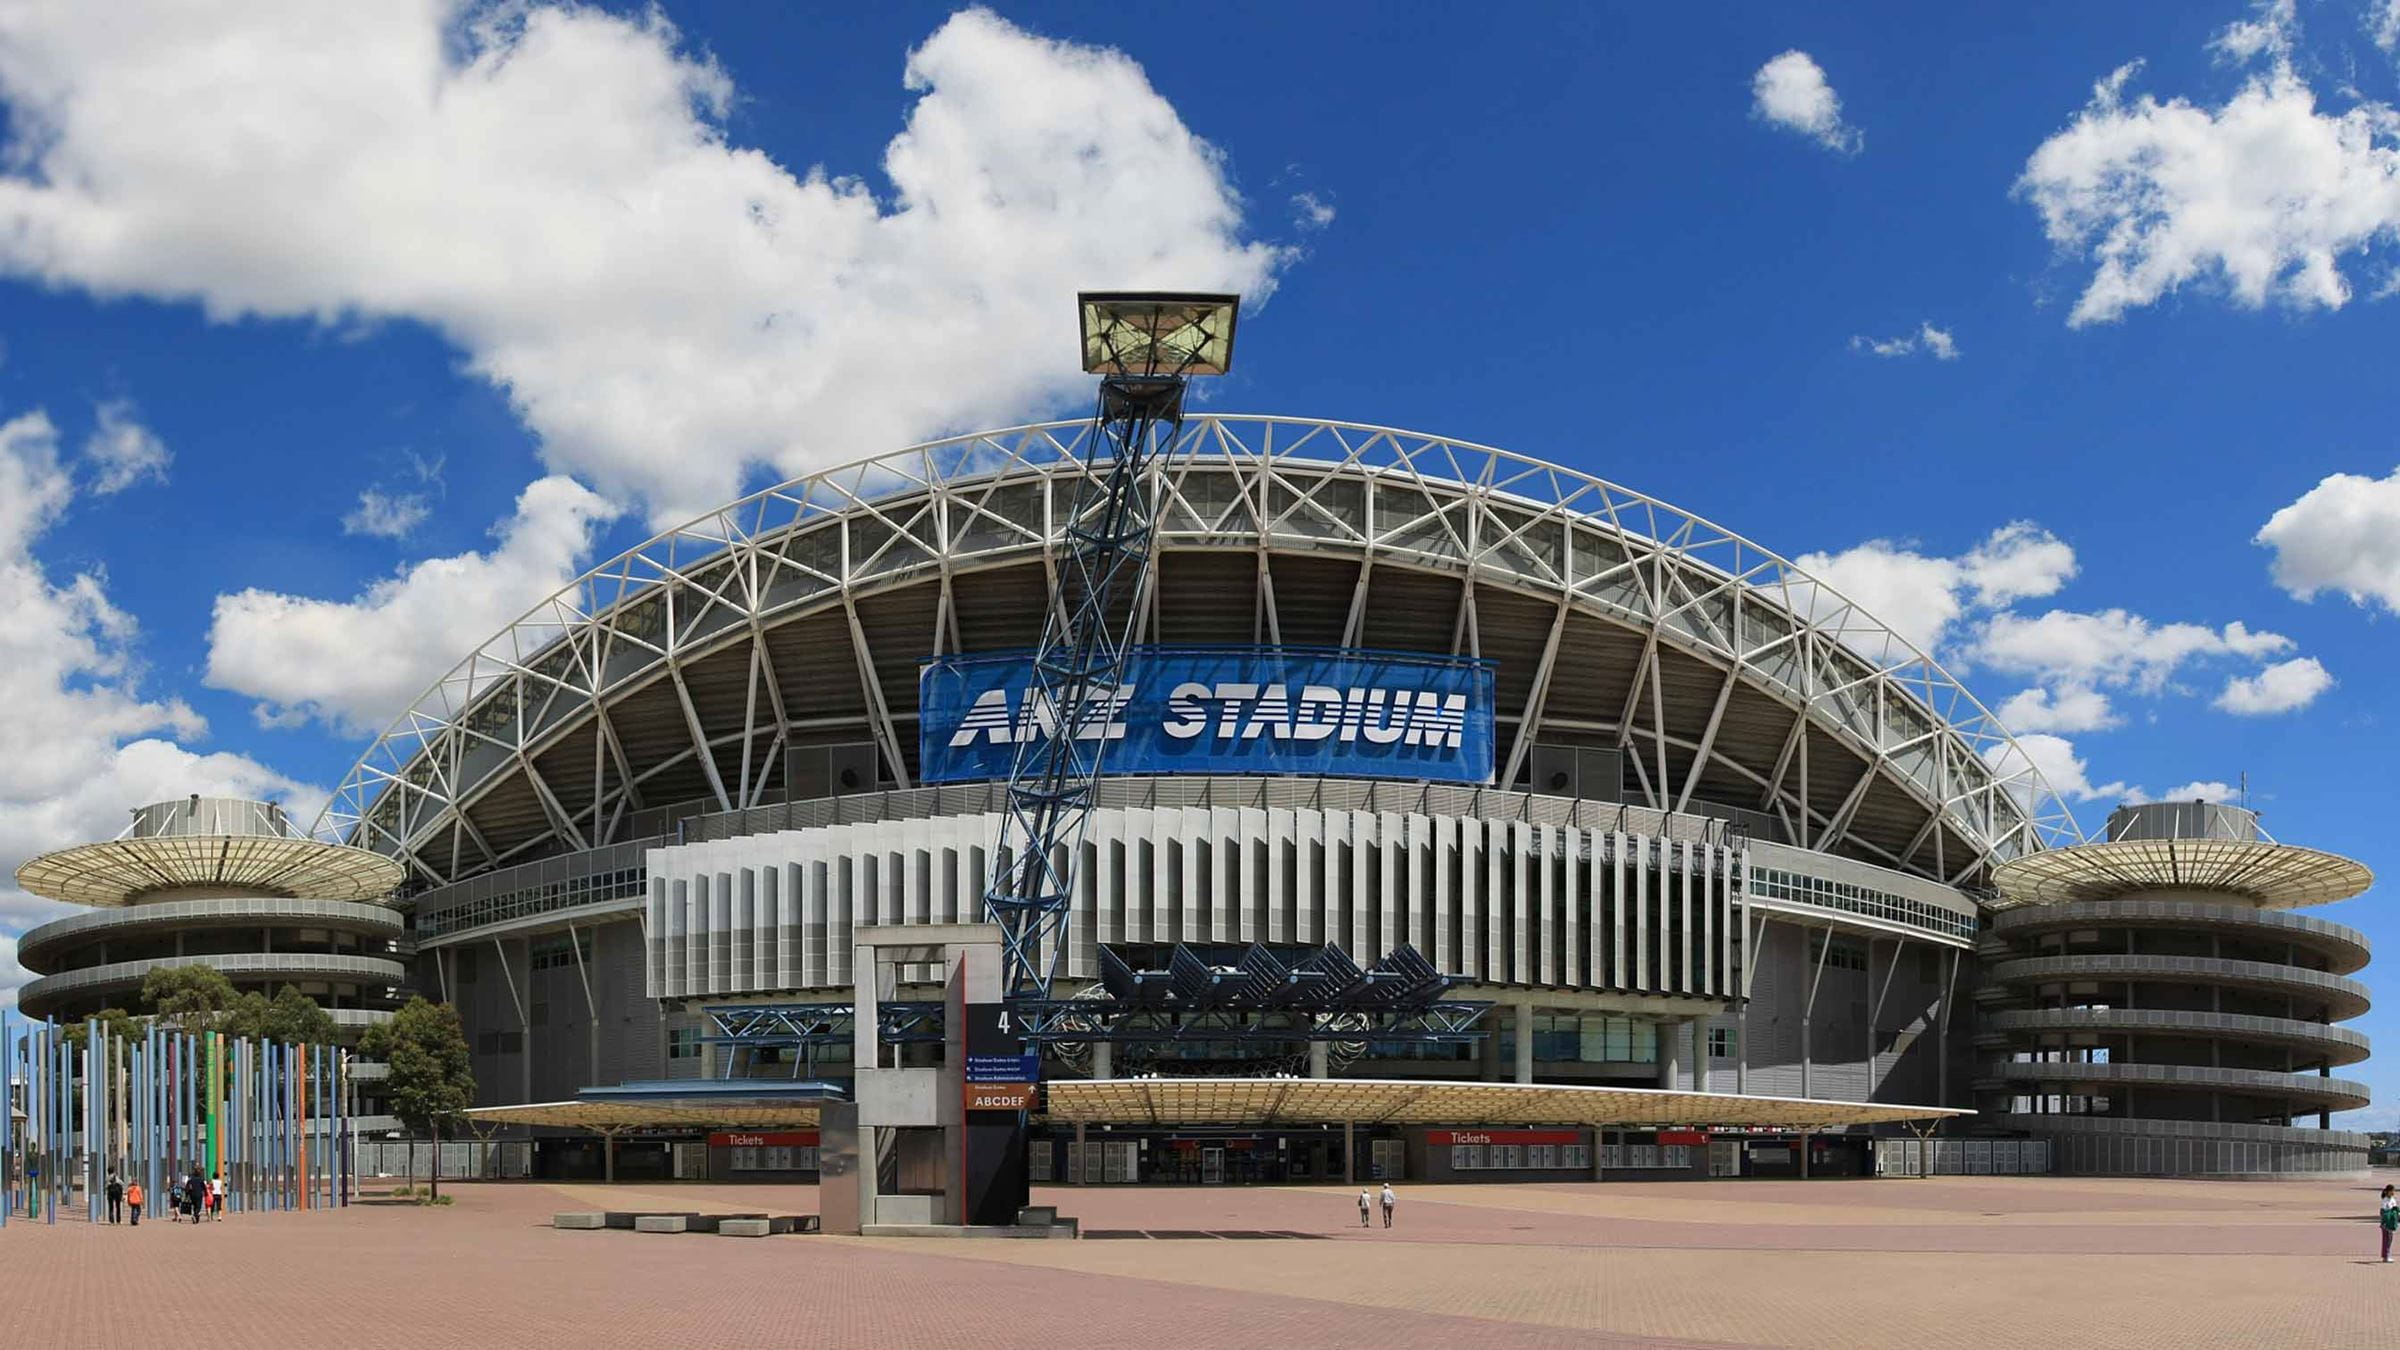 Exterior of ANZ stadium in Australia